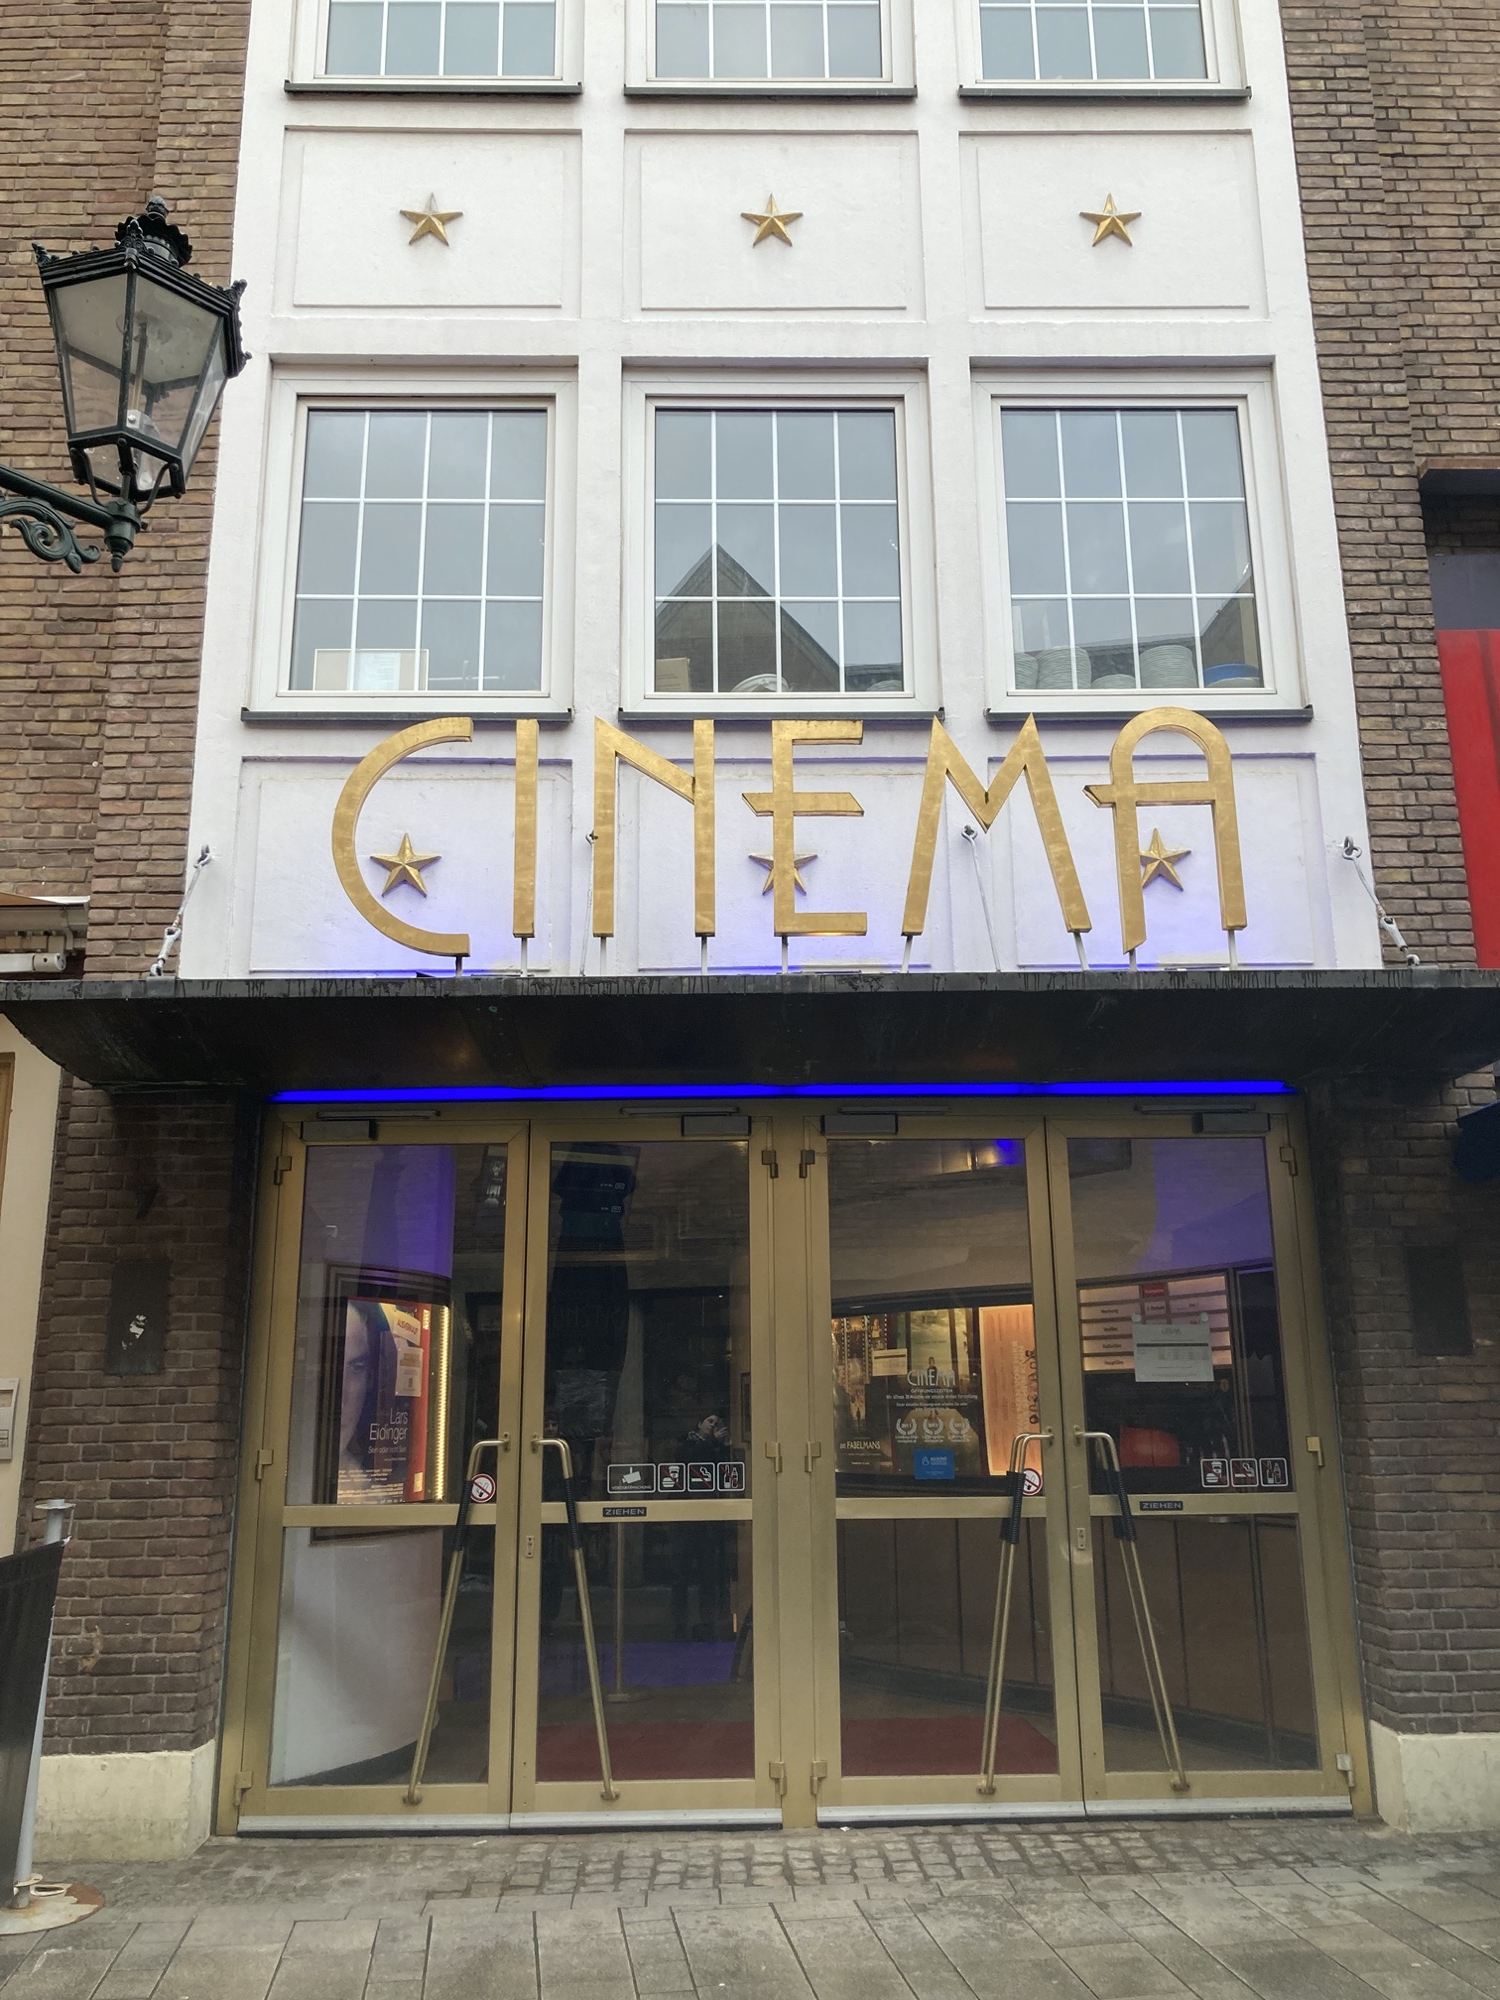 Eingang eines altmodischen Kinos, hinter zwei Glas-Flügel-Türen ist die Kasse des Kinos zu sehen, über dem Eingang der Schriftzug „CINEMA“ in einer schlanken, eckigen Schriftart, dahinter ist ein Teil des Gebäudes weiß verkleidet, zwischen den Fenstern sind goldene Sterne montiert